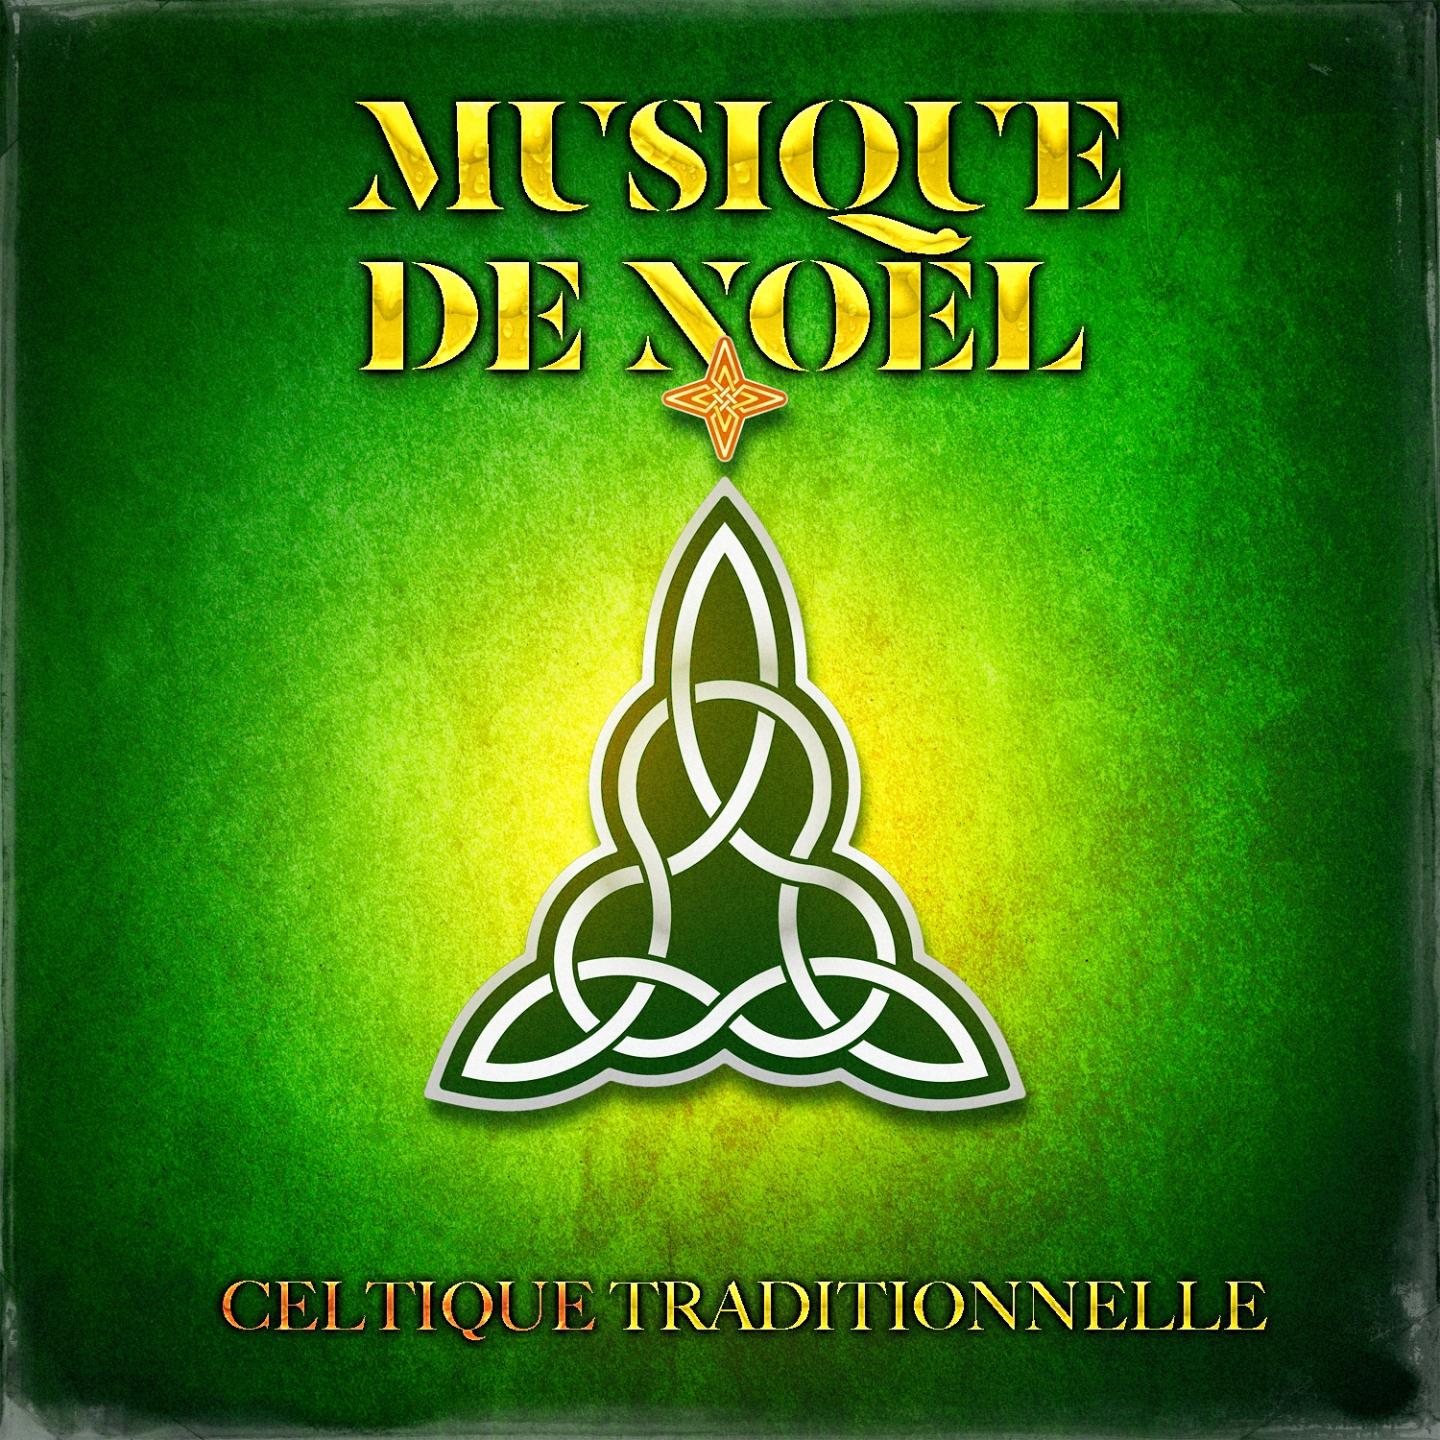 Musique de No l celtique traditionnelle